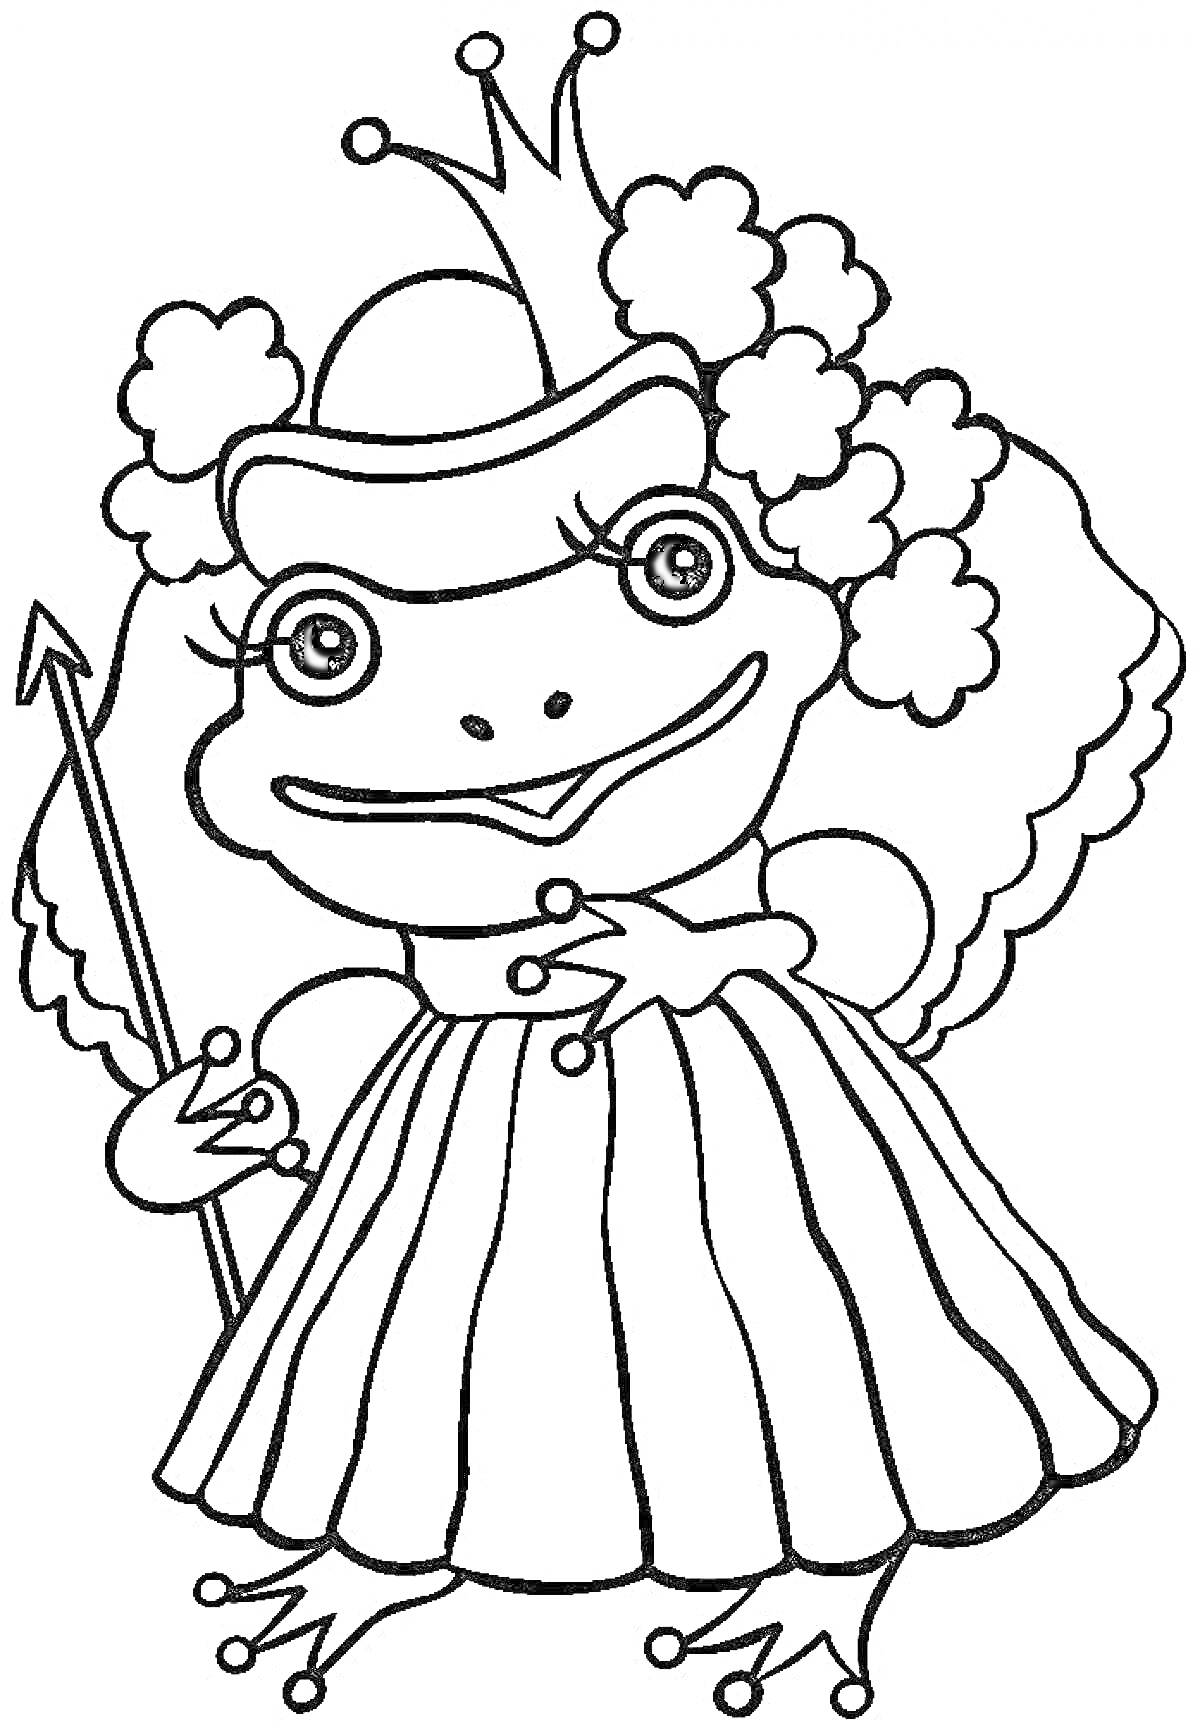 Лягушка-принцесса в короне и платье, со скипетром и цветочной короной на голове